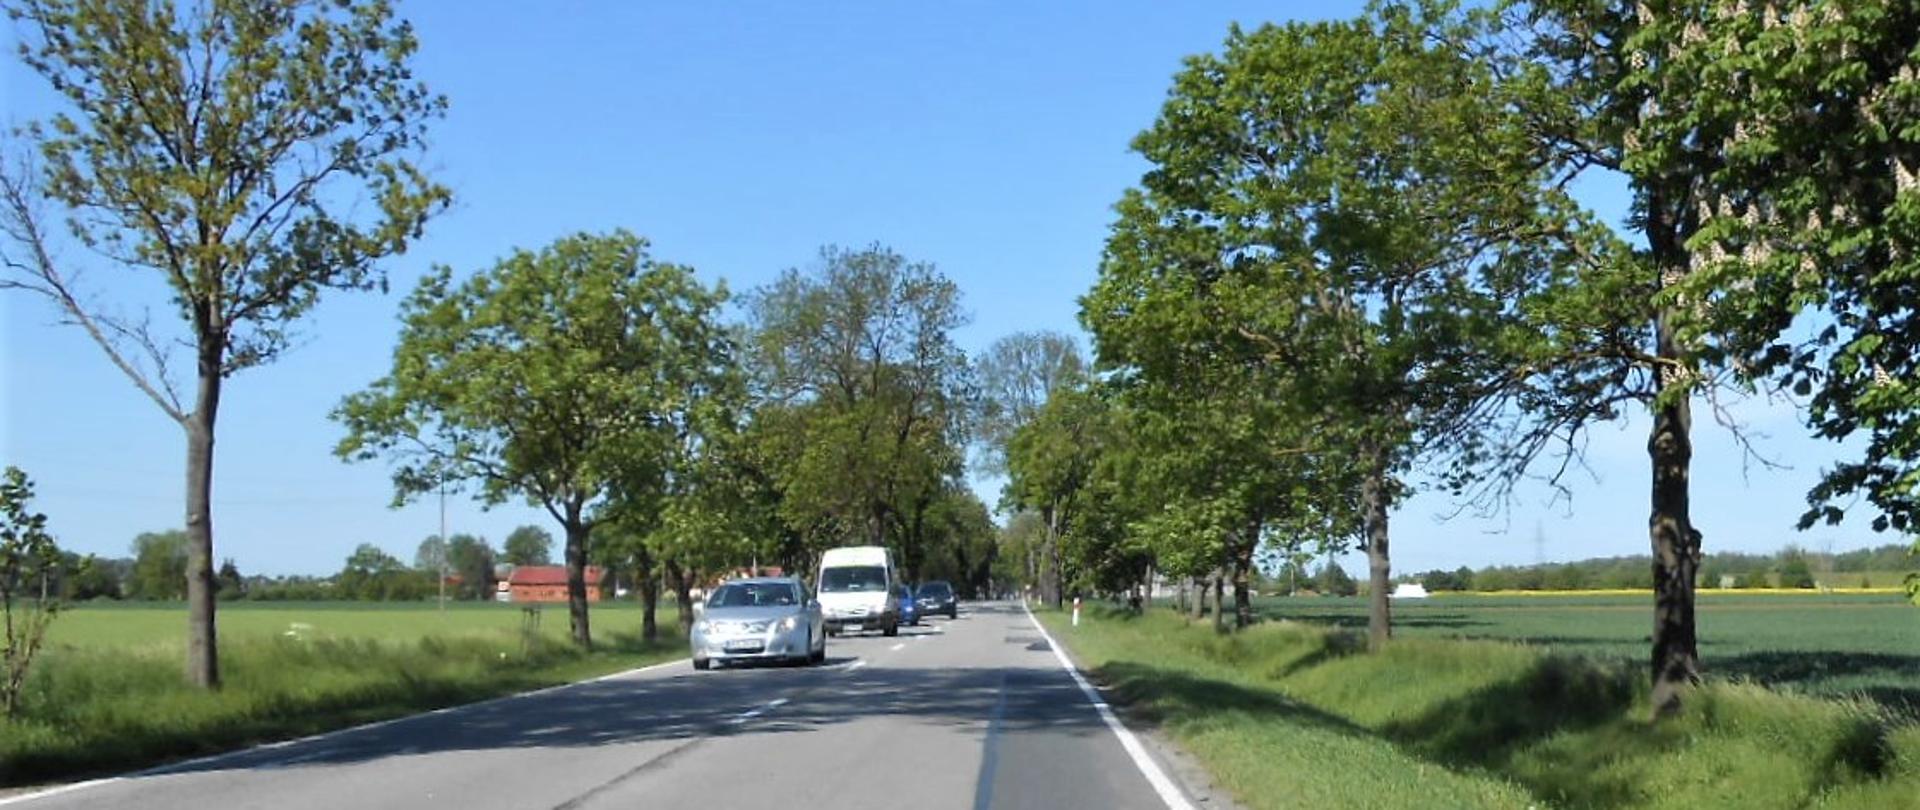 Zdjęcie przedstawia drogę krajową nr 22 z jadącymi pojazdami po obu stronach widać pola uprawne i drzewa.